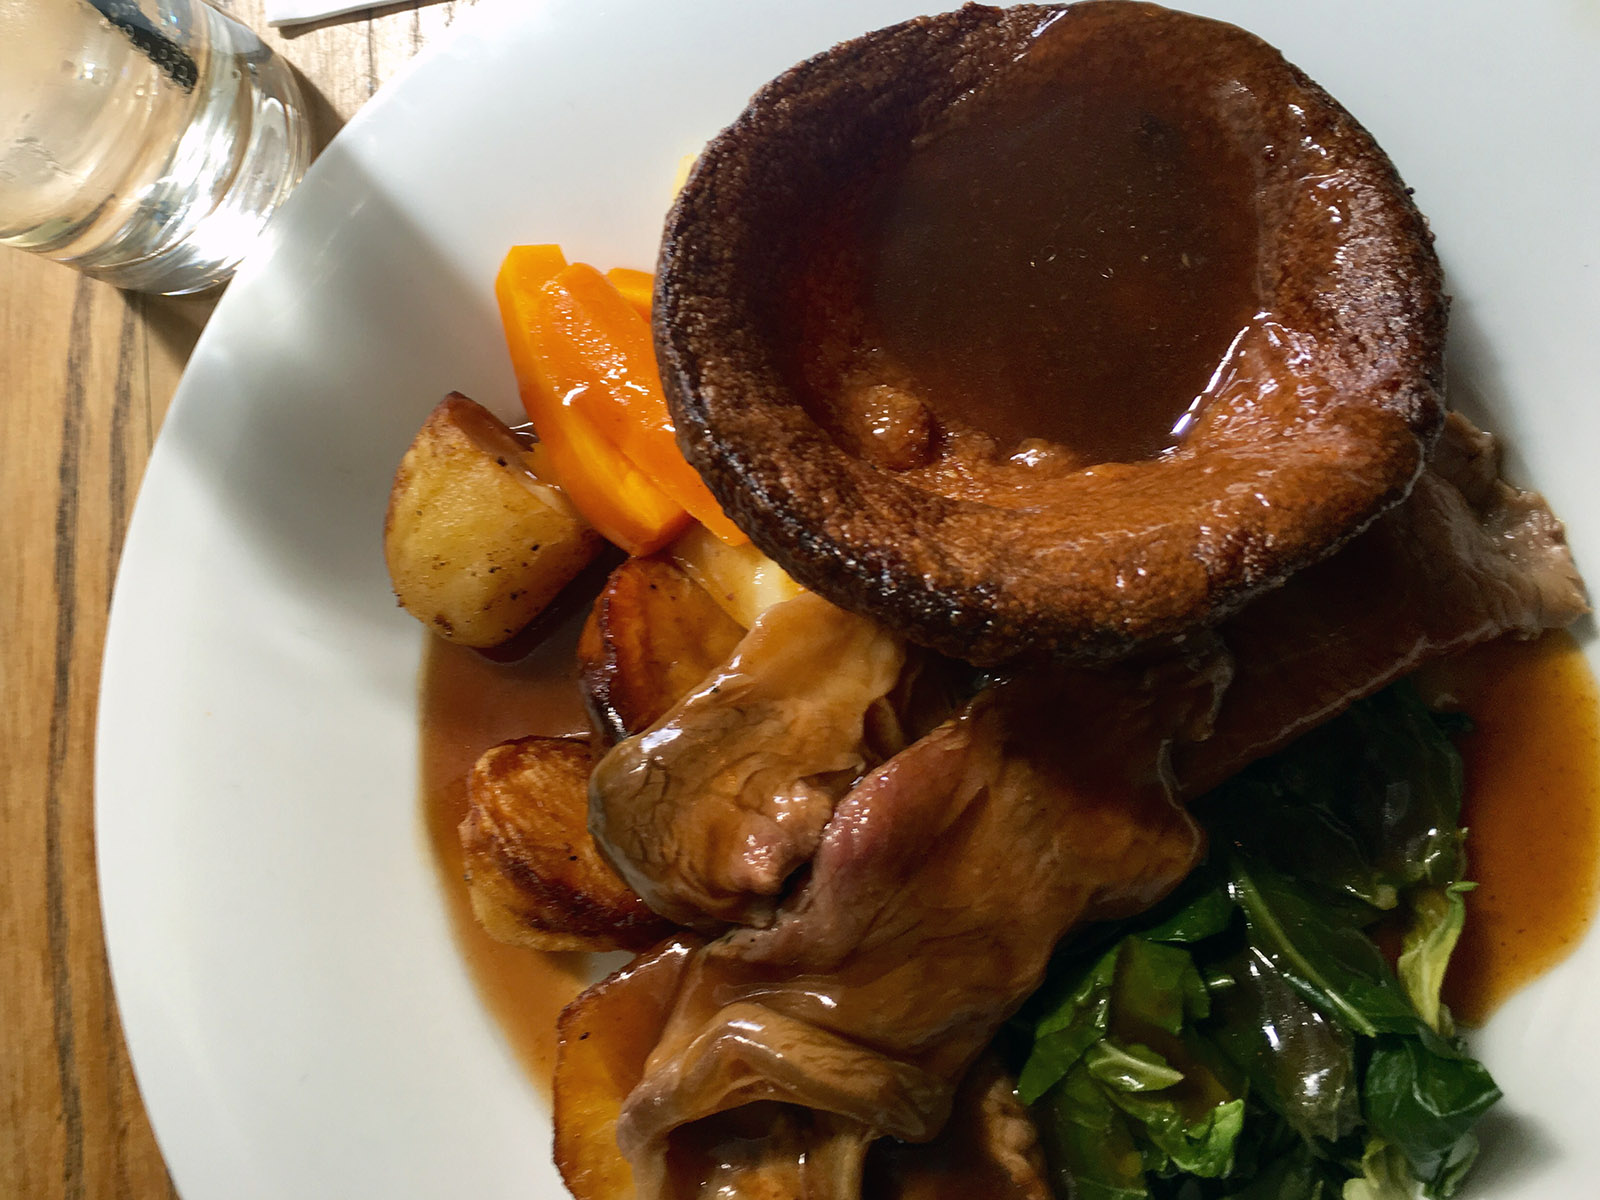 Sunday roast & Yorkshire pudding: coppia che vince non si cambia